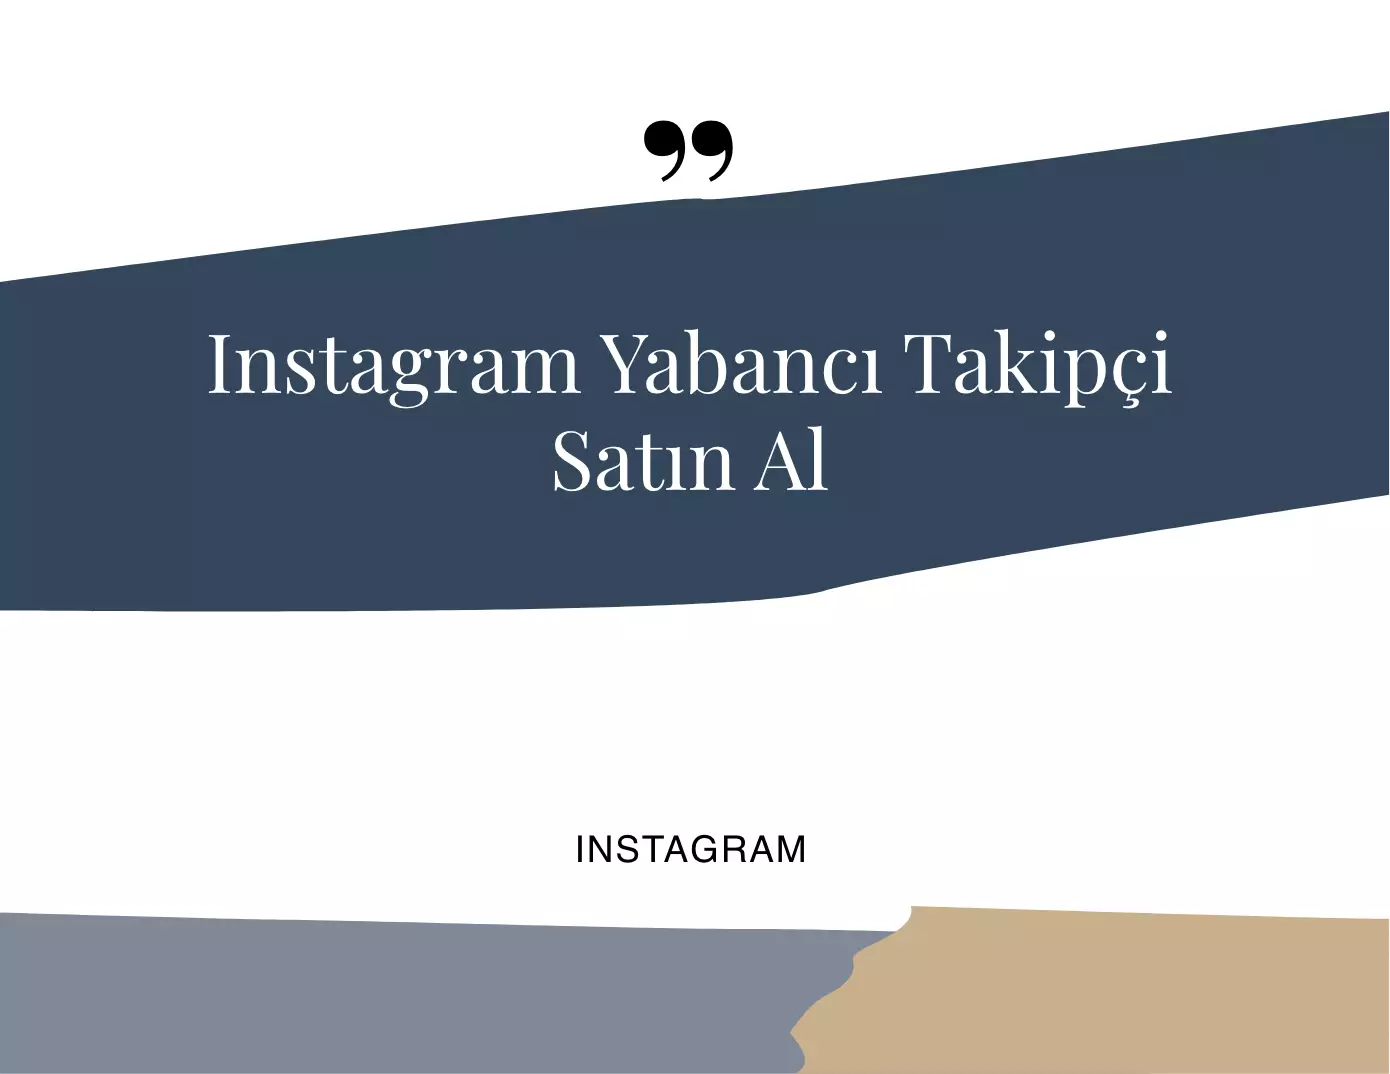 Instagram Yabancı Takipçi Satın Alma